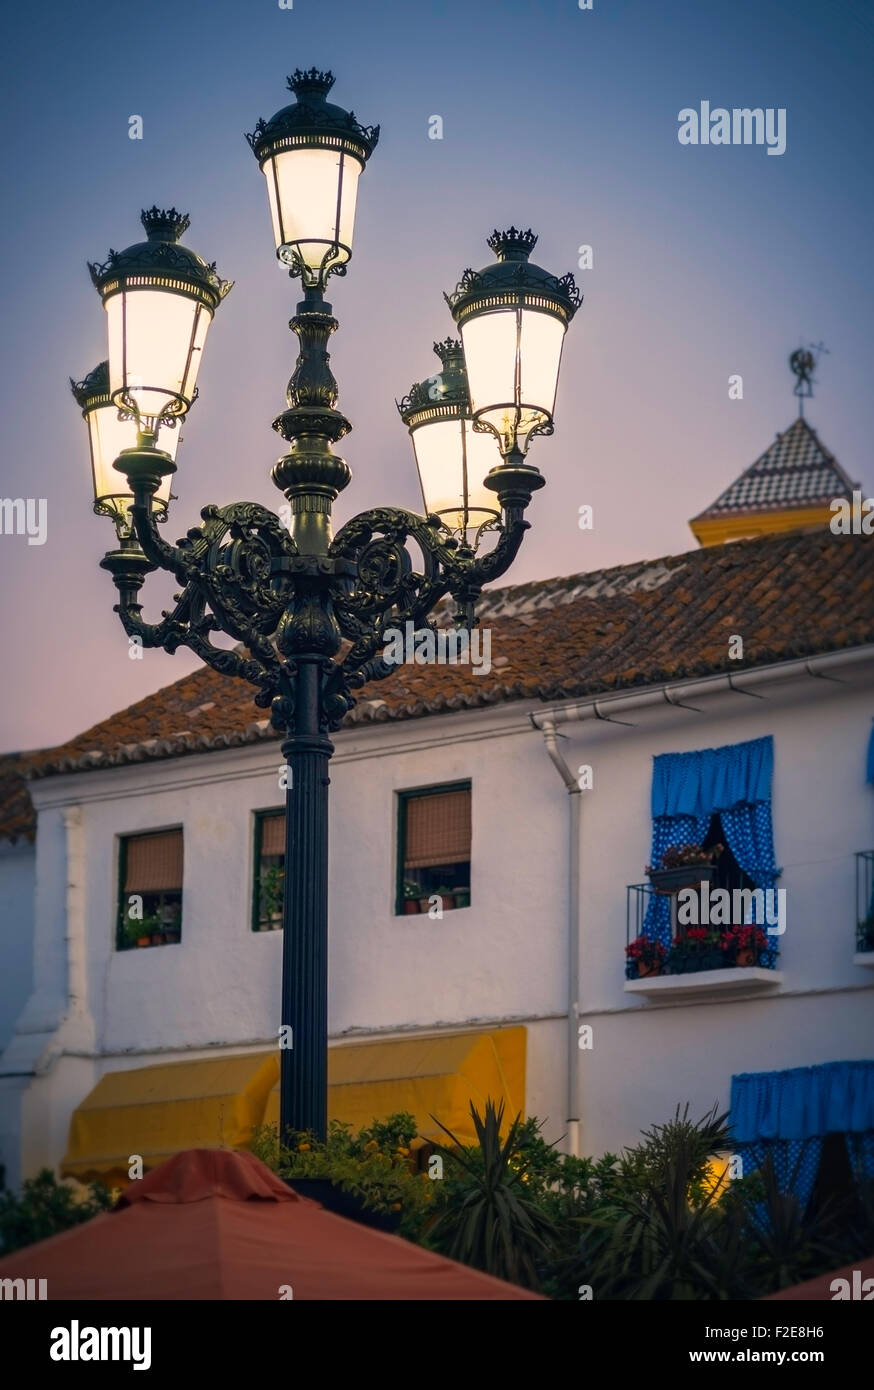 Una ornamentada luces de calle en la Plaza de los naranjos en Marbella, España. Foto de stock